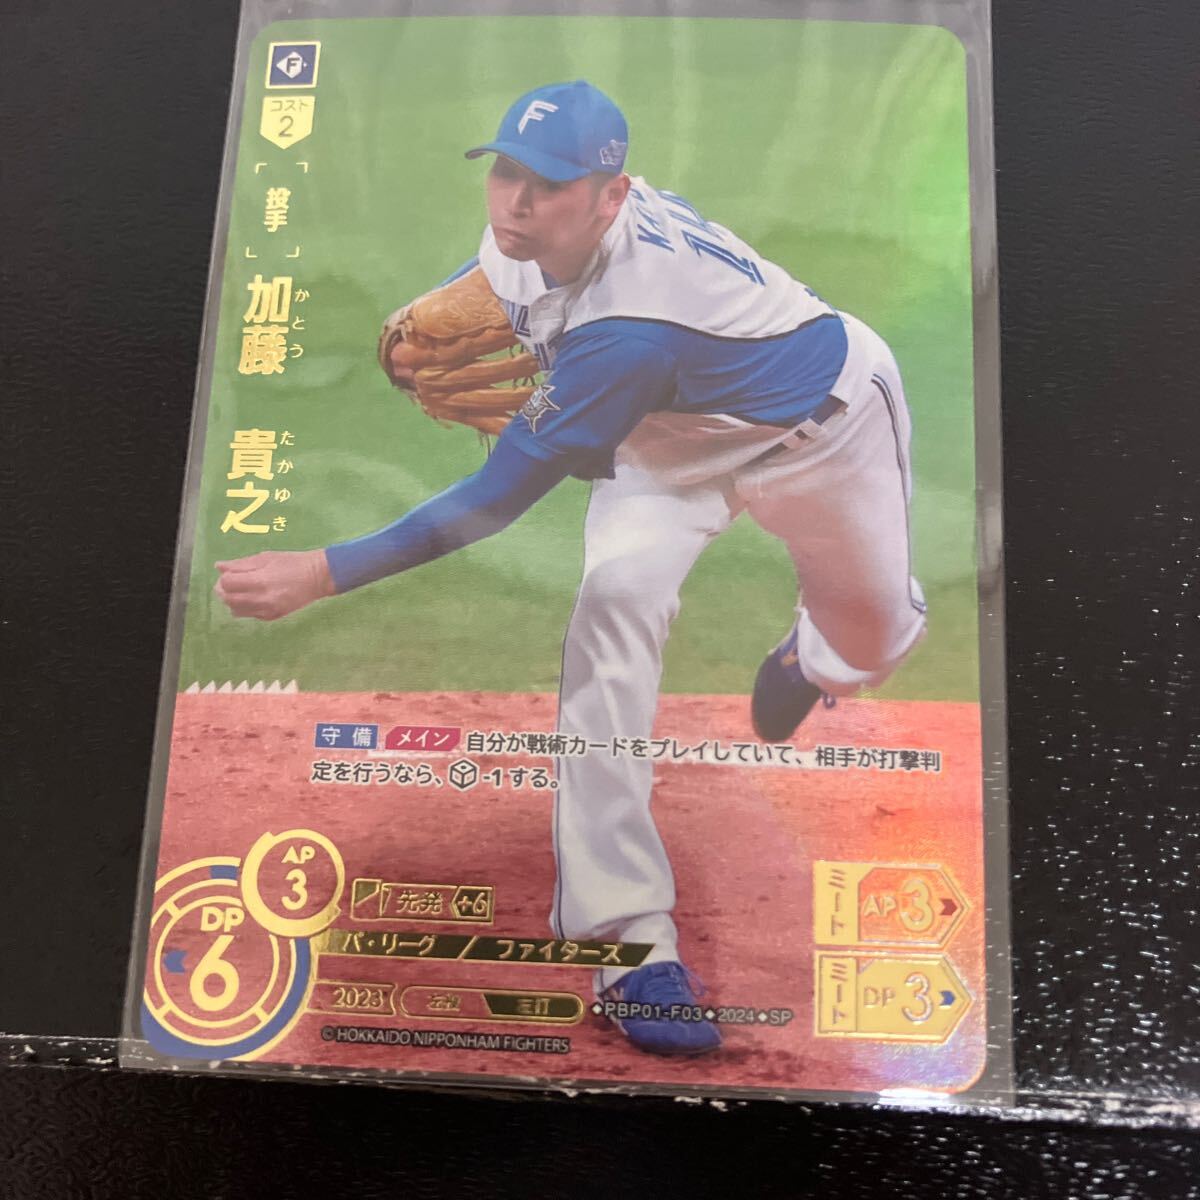 加藤貴之 SP ドリームオーダー プロ野球カードゲーム 日本ハムファイターズの画像1